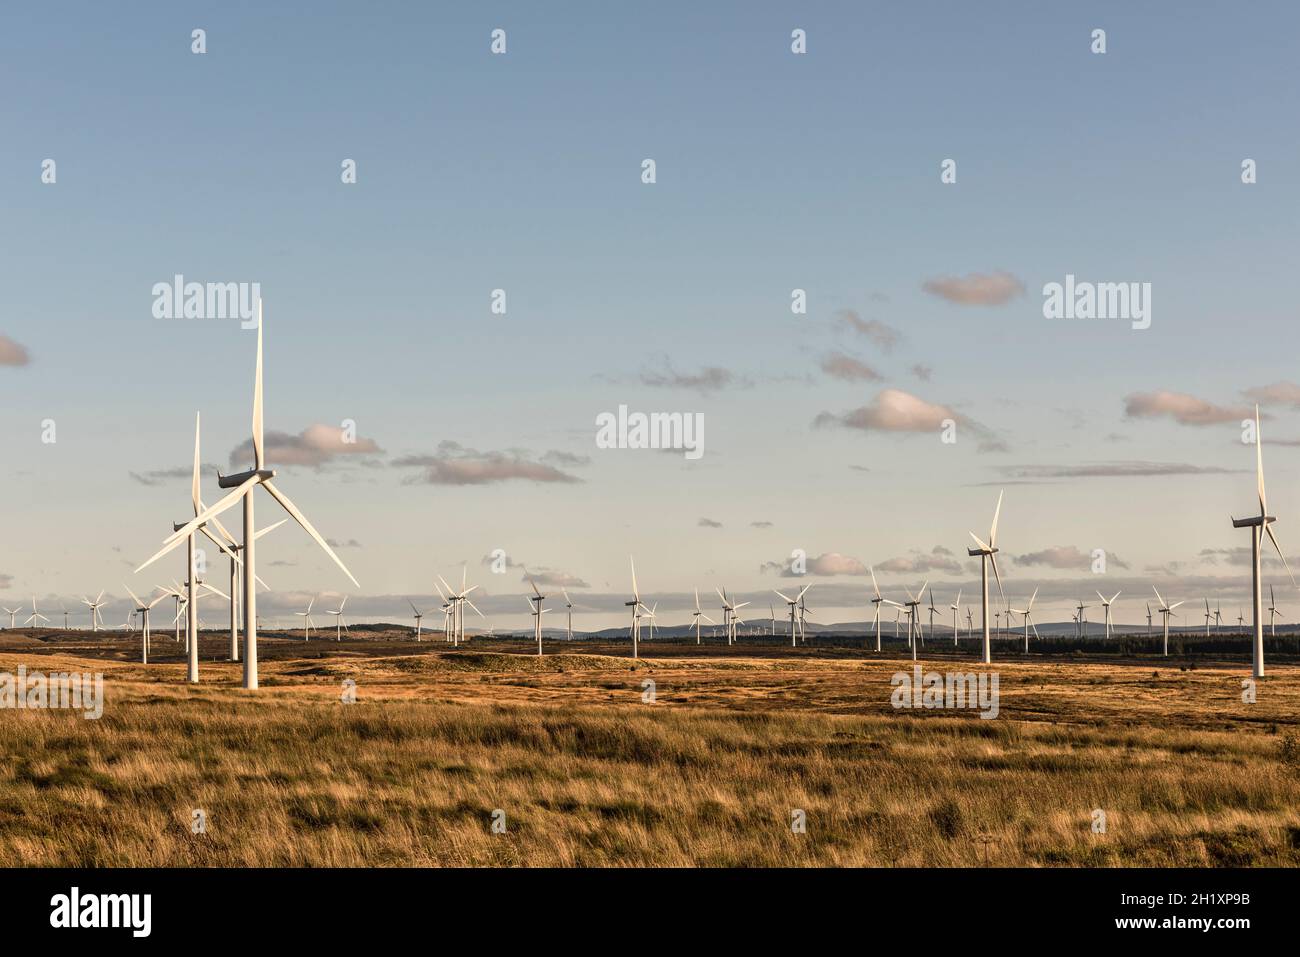 Einige der 215 Windenergieanlagen im Whitelee Windpark auf Eaglesham Moor in der Nähe von Glasgow, Schottland, Großbritannien, dem größten Onshore-Windpark Großbritanniens Stockfoto